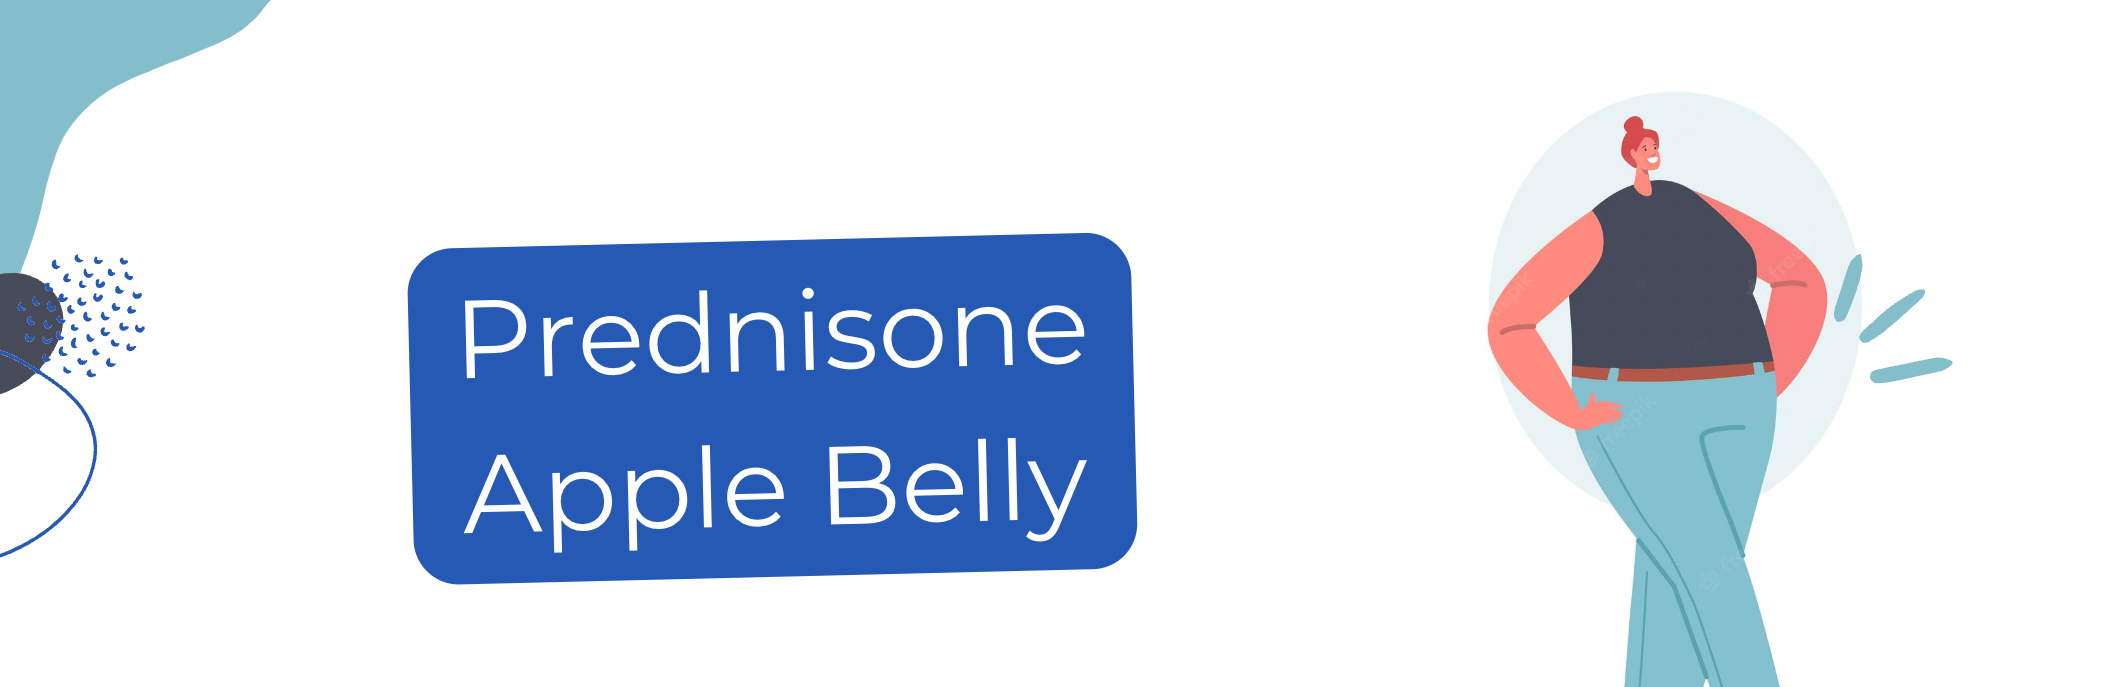 prednisone apple belly